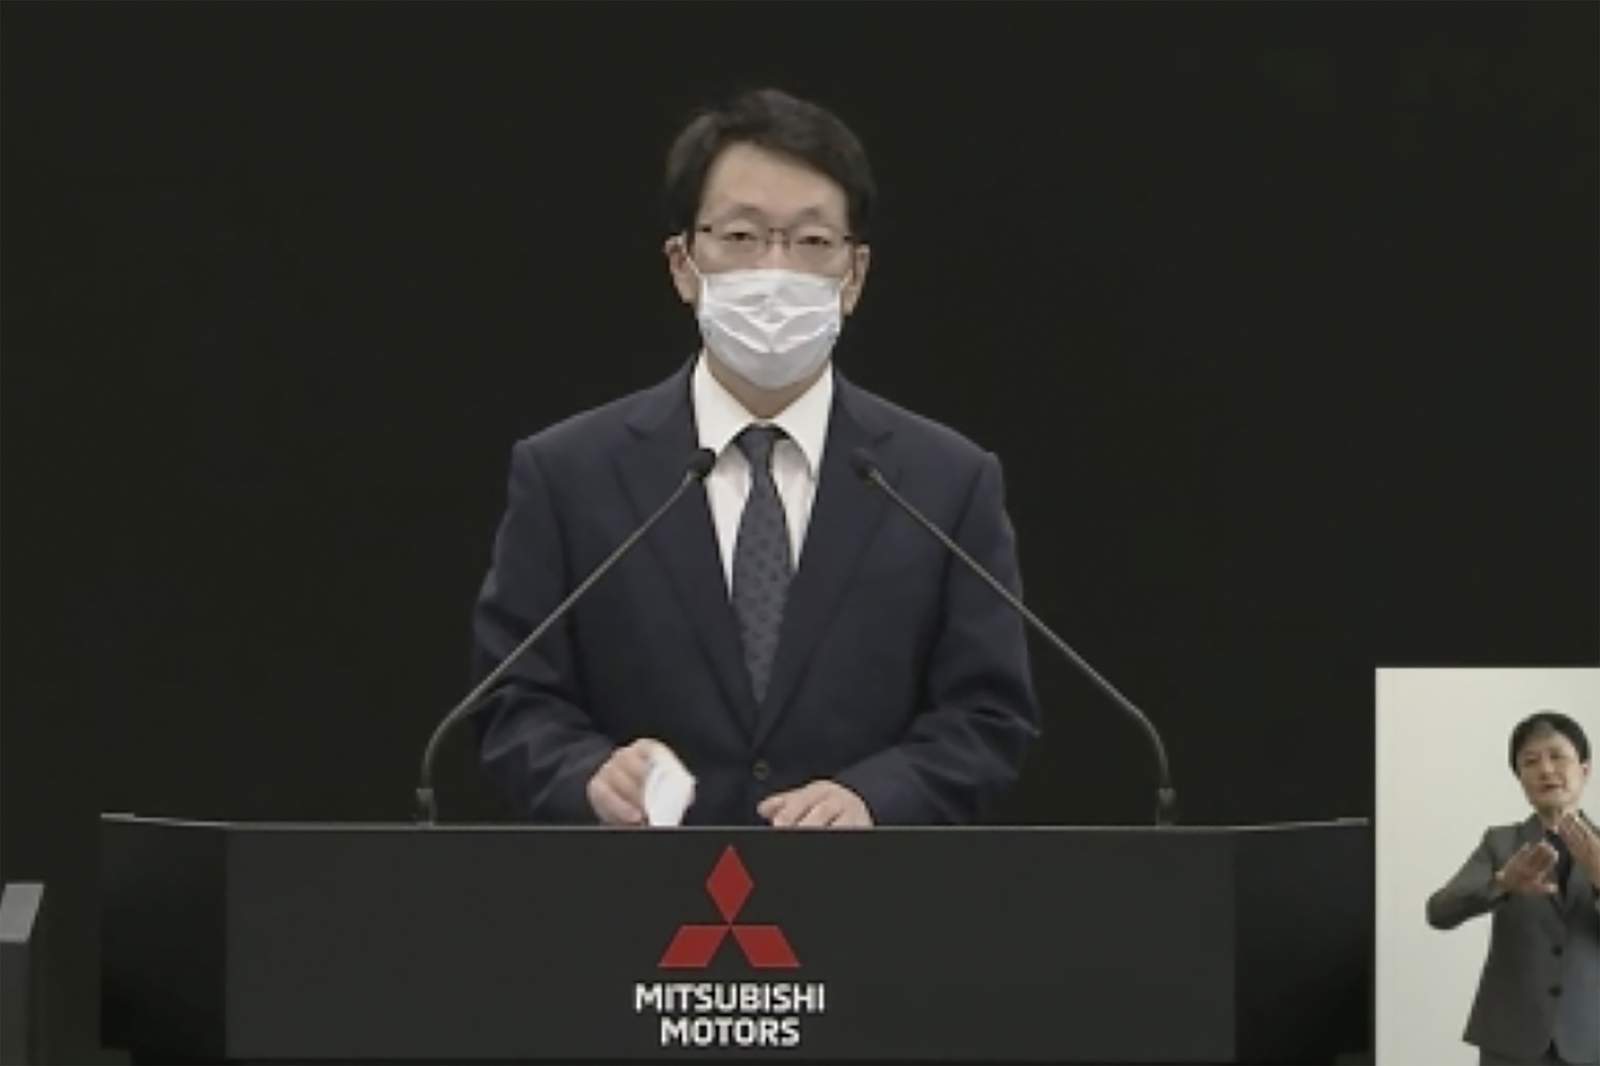 Money-losing Mitsubishi says executives will take pay cuts